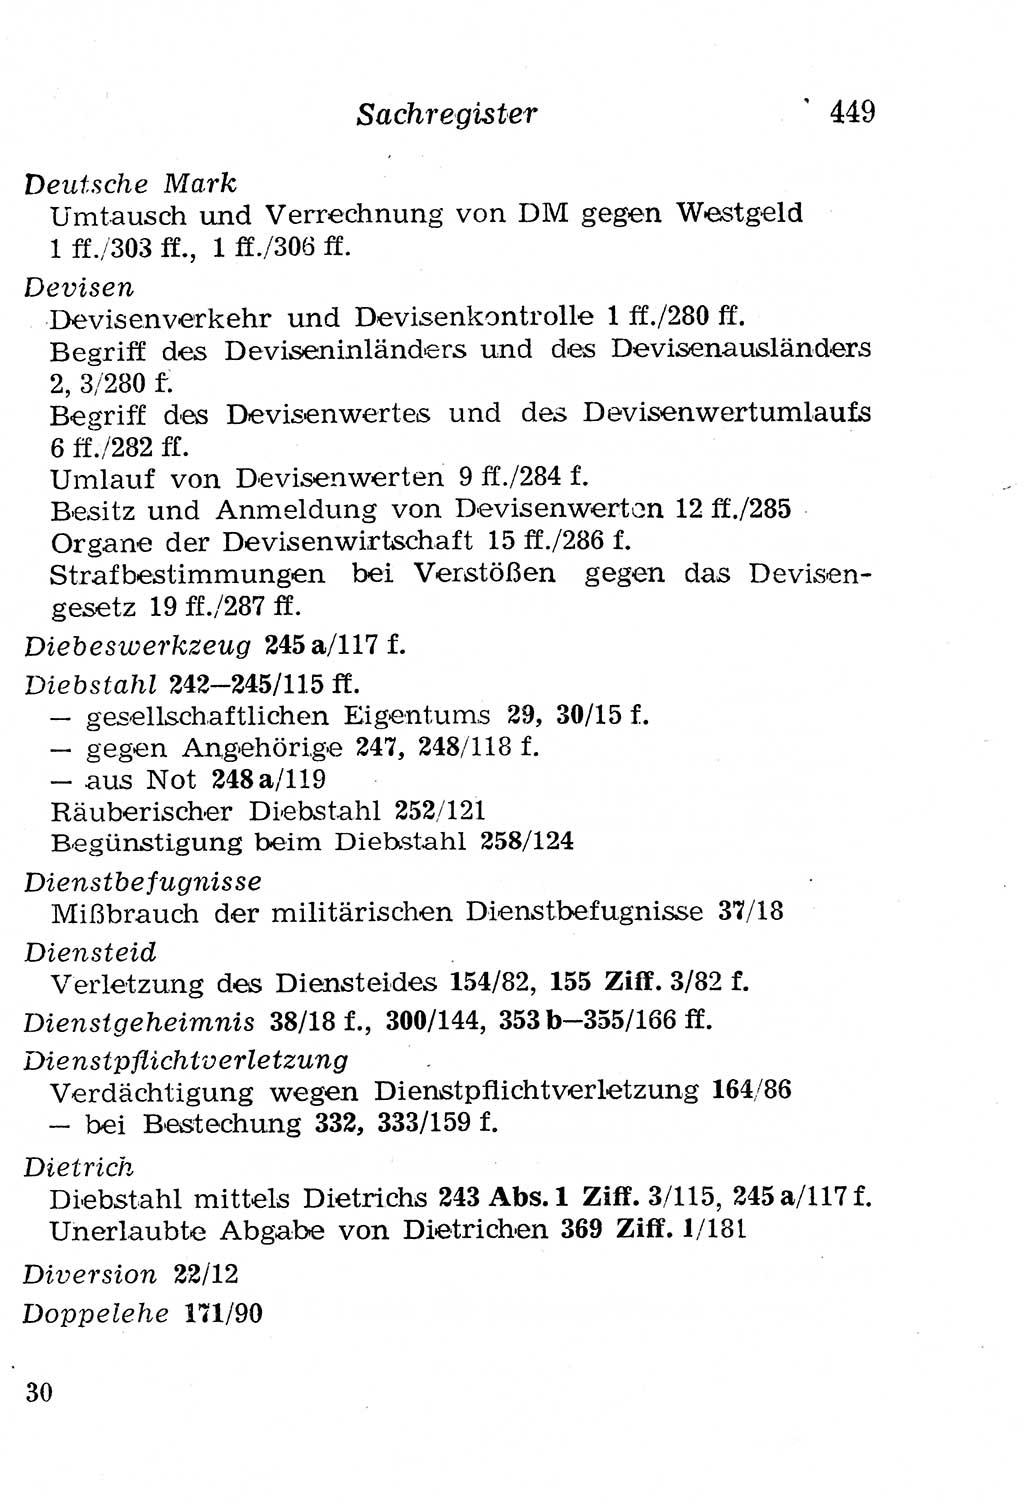 Strafgesetzbuch (StGB) und andere Strafgesetze [Deutsche Demokratische Republik (DDR)] 1958, Seite 449 (StGB Strafges. DDR 1958, S. 449)